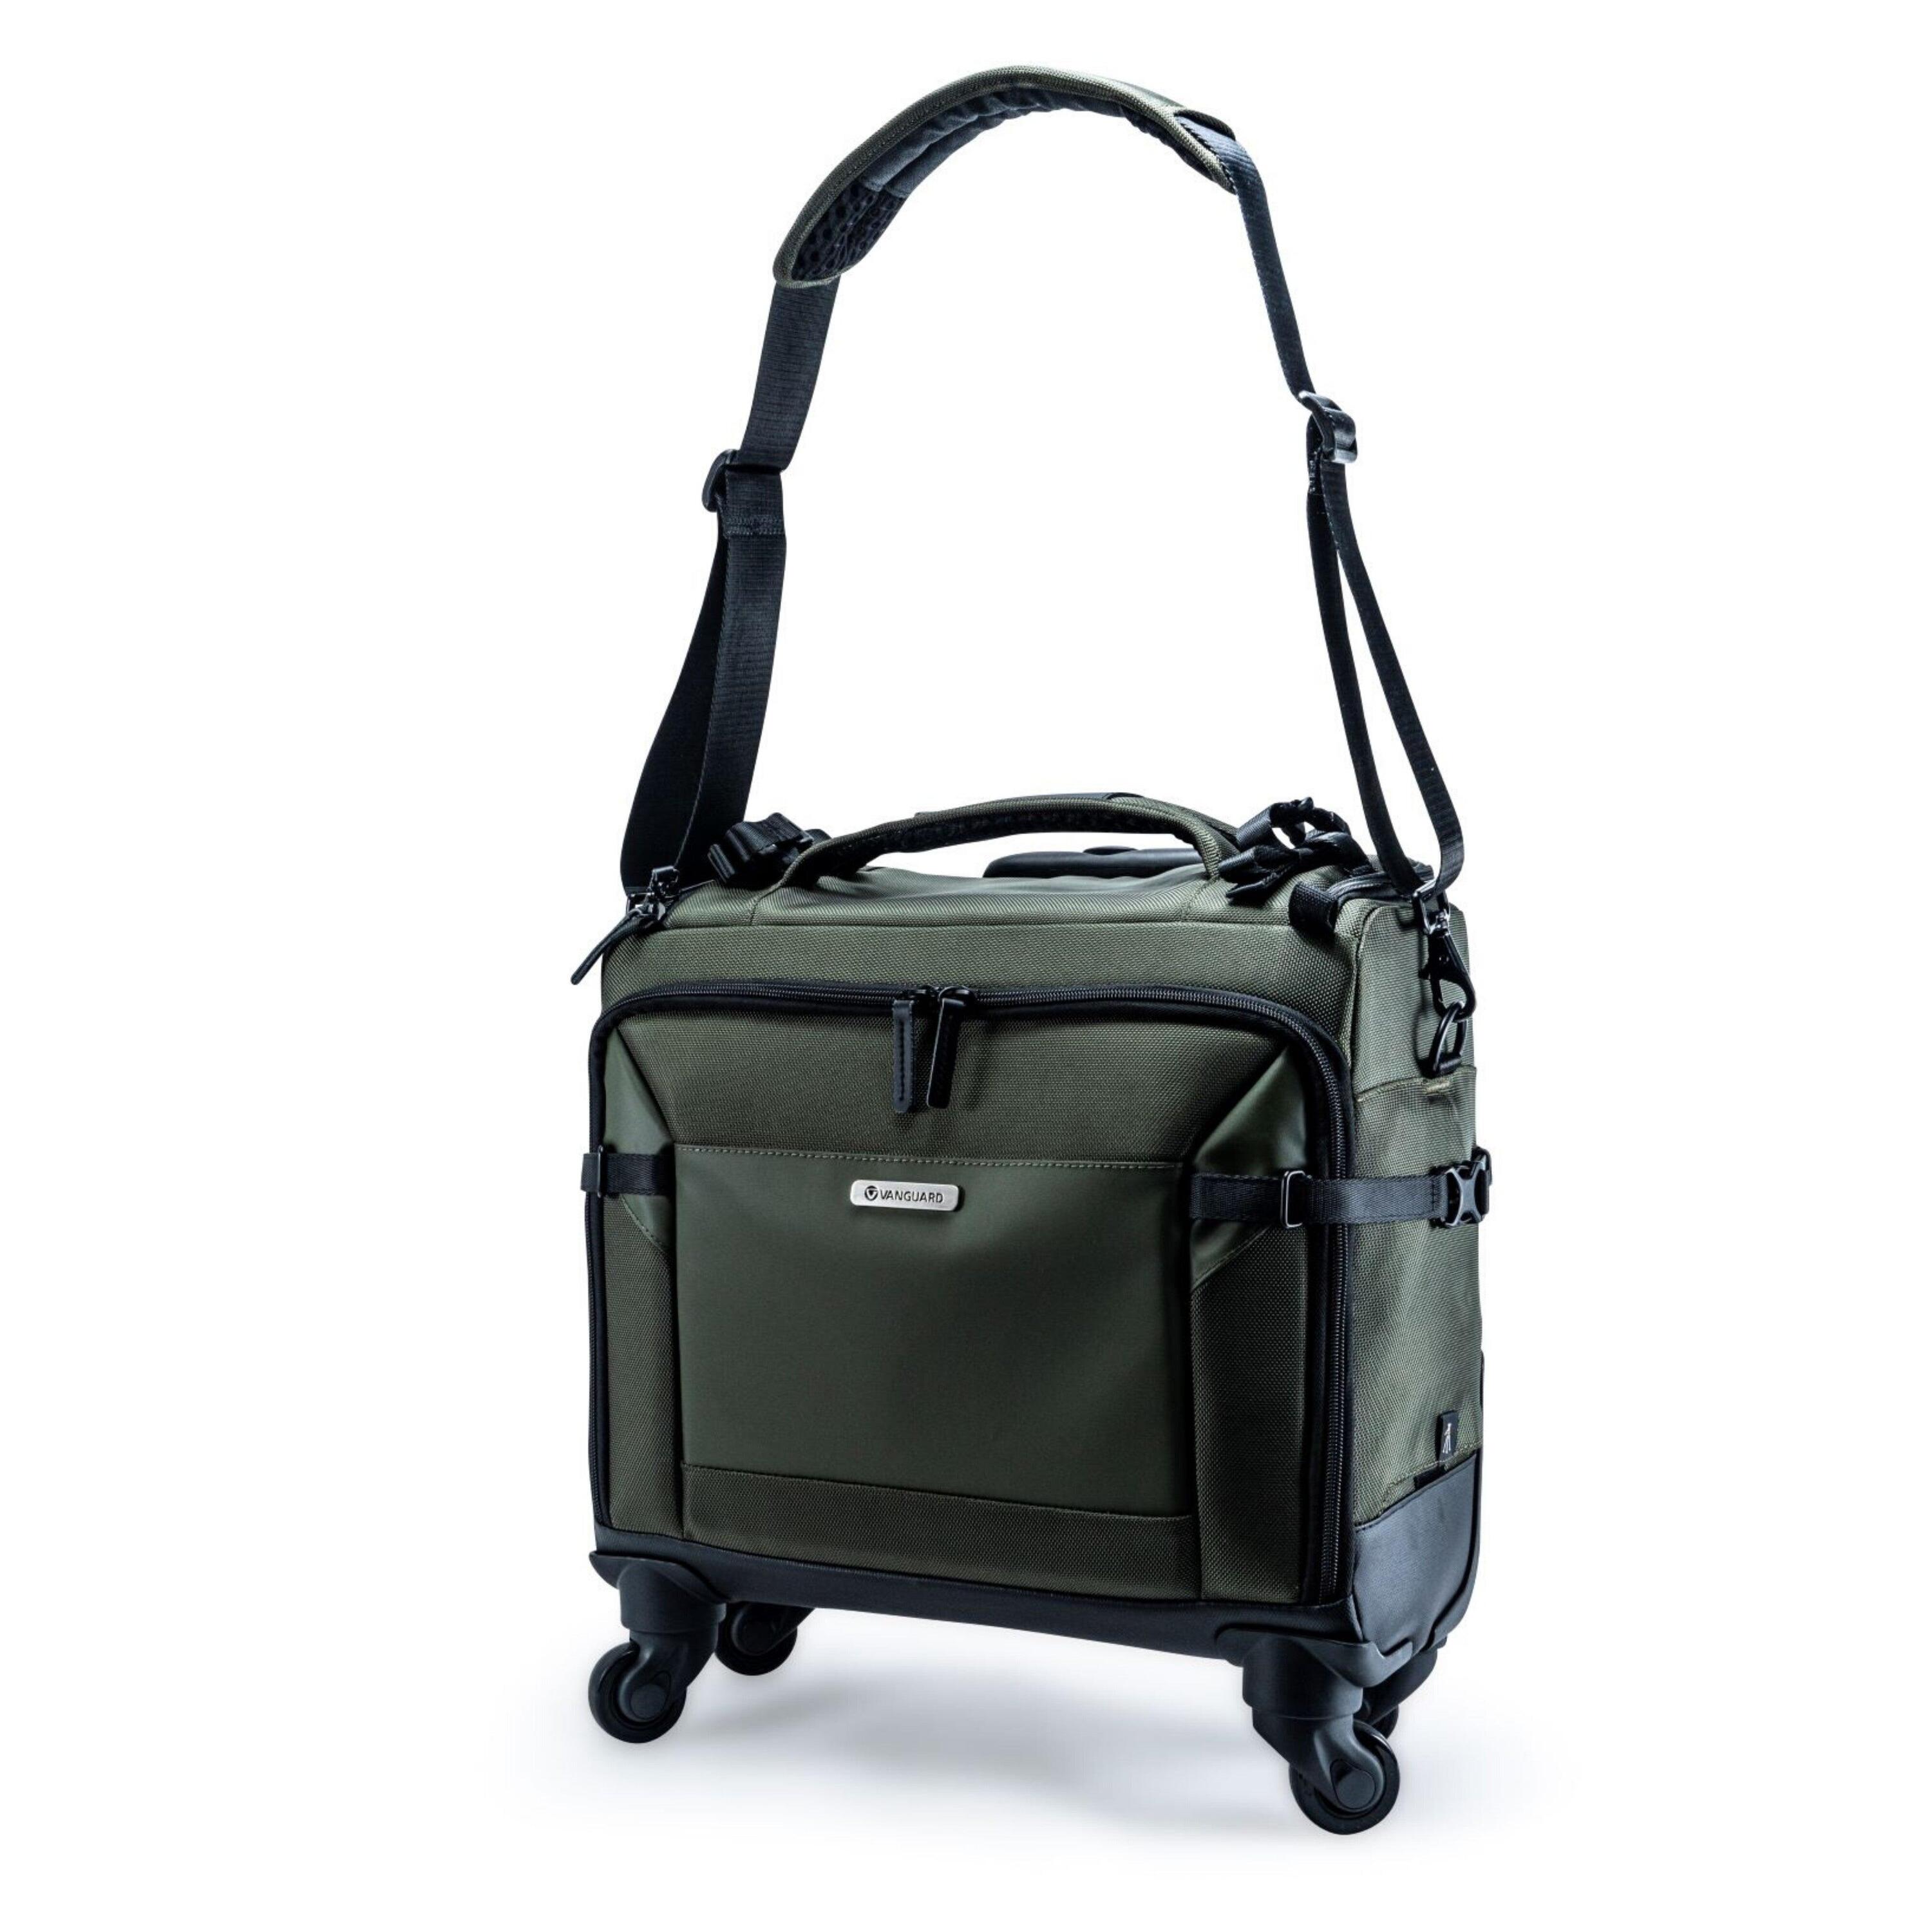 VANGUARD VEO Select 42T GR - Pilot Style Camera Roller/Shoulder Bag - Green